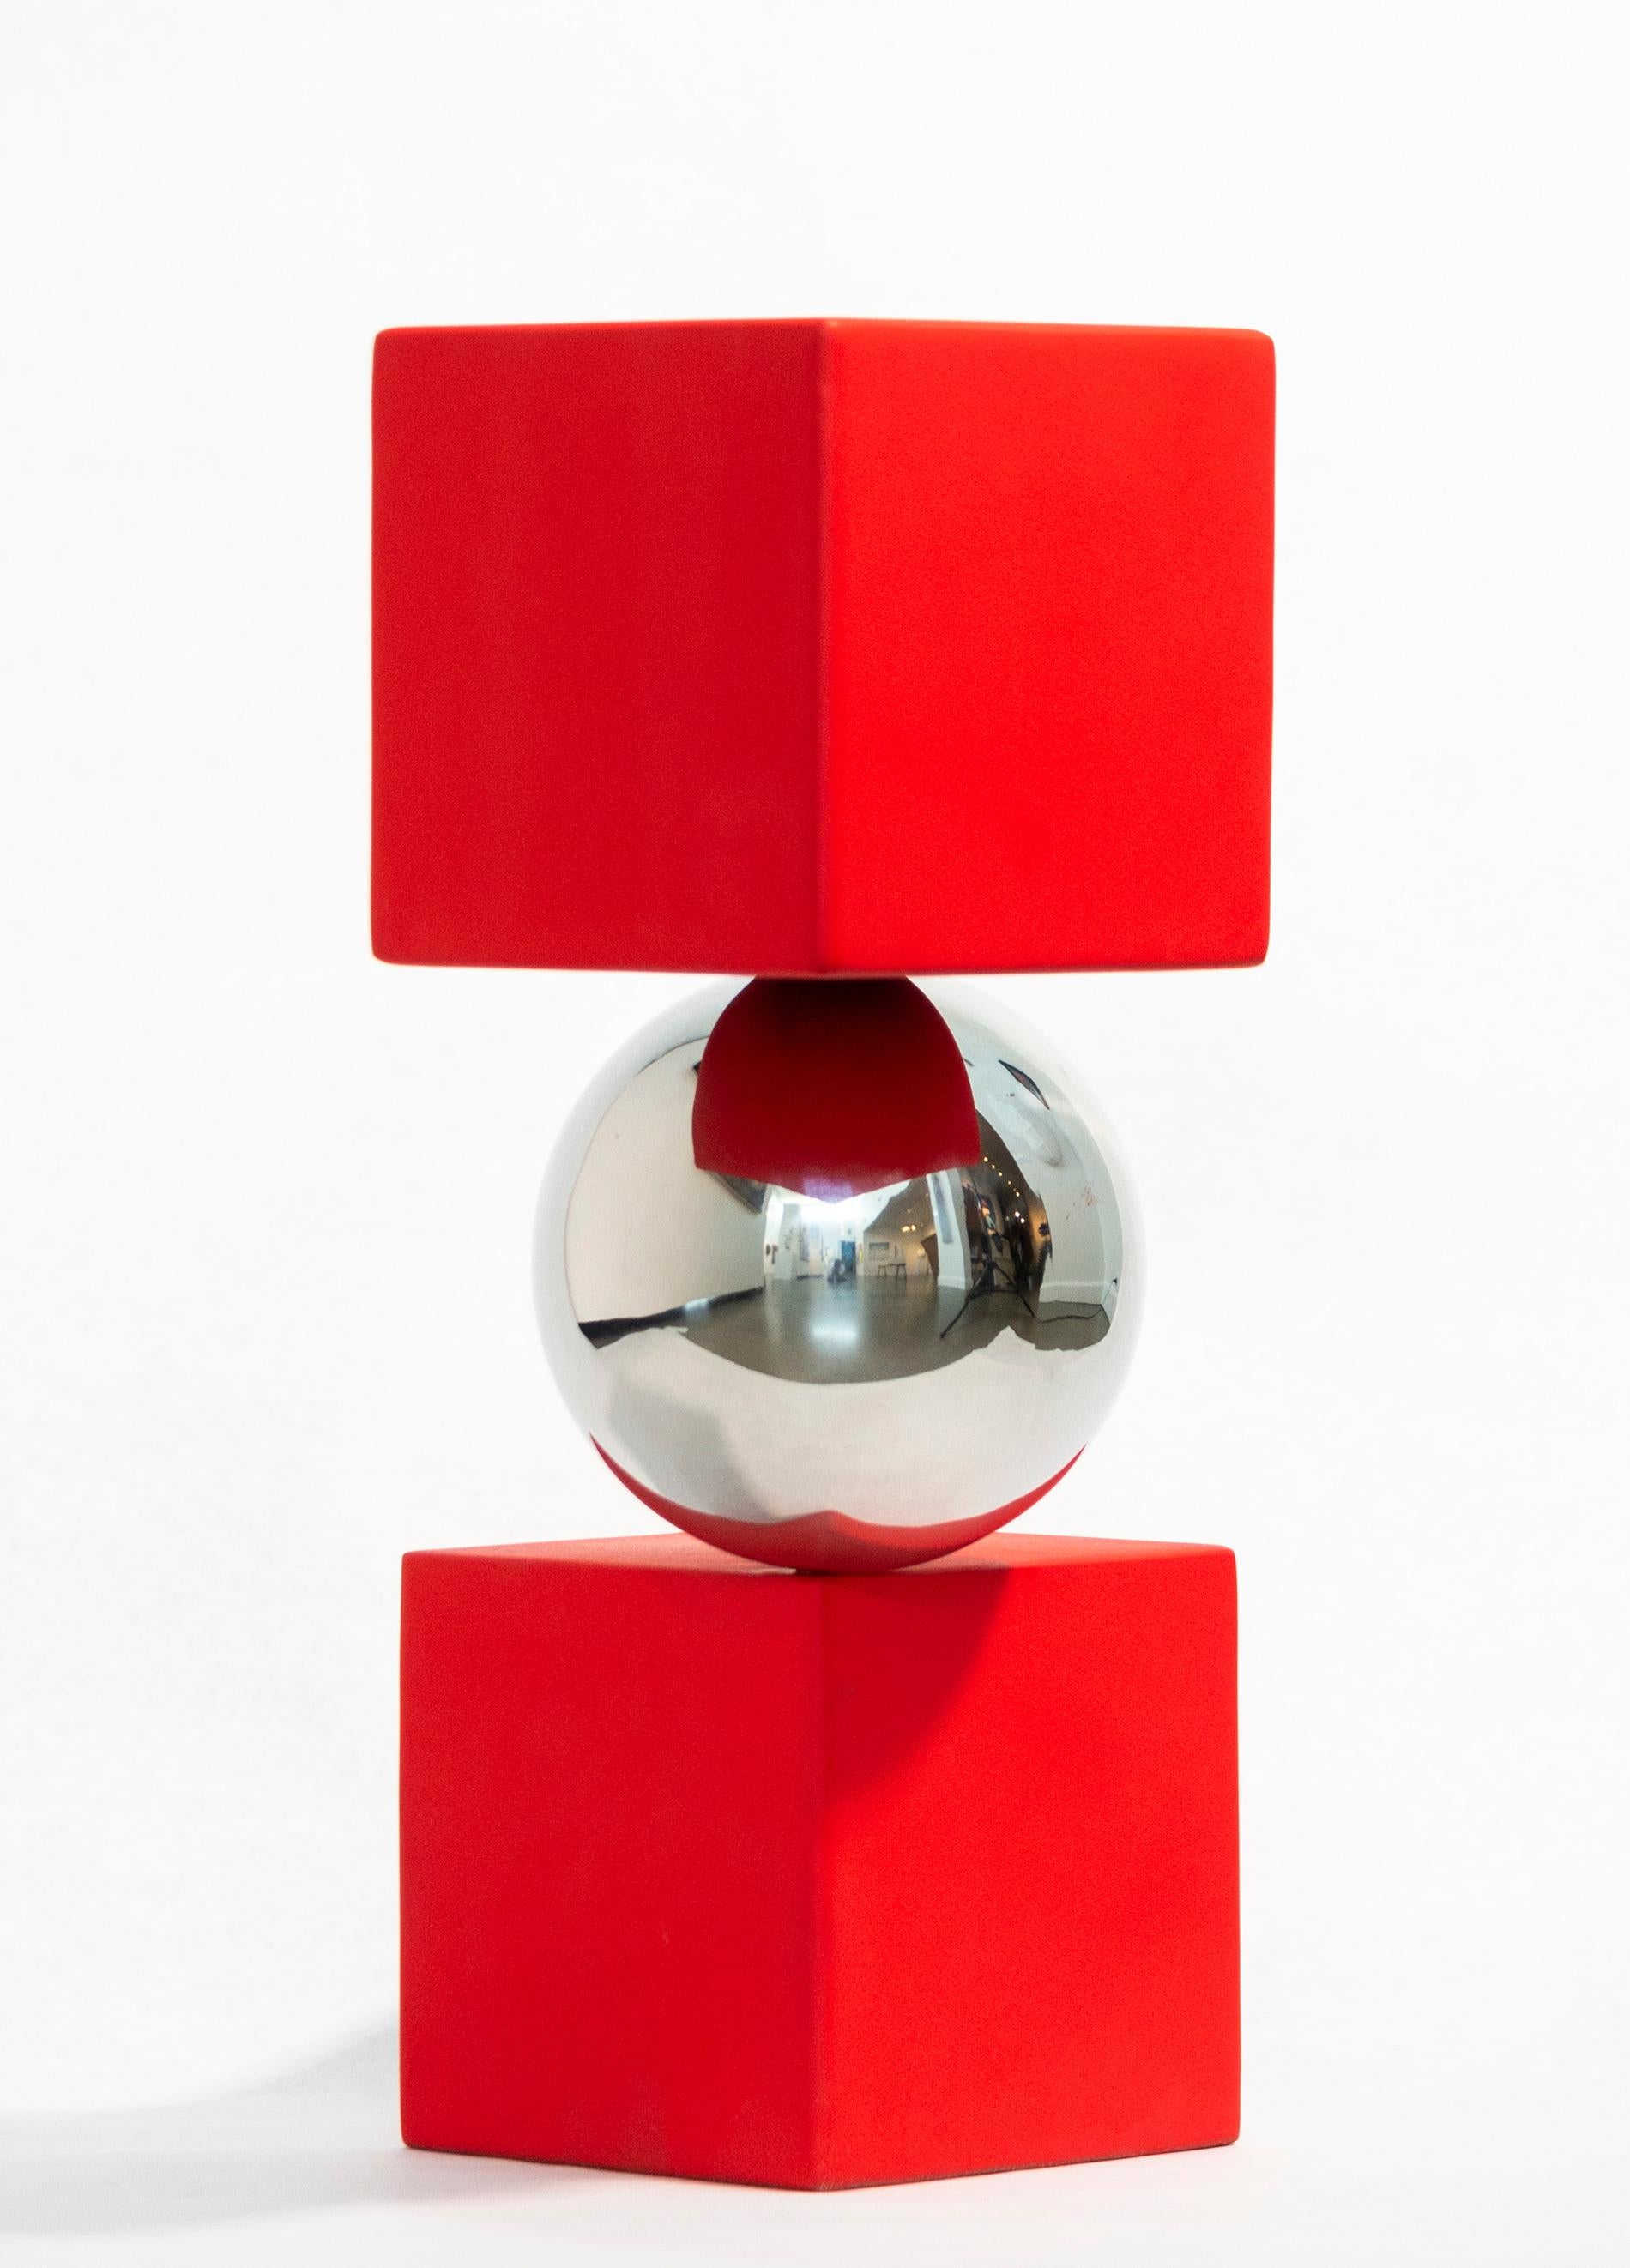 Les sculptures contemporaines spectaculaires de Philippe Pallafray semblent souvent défier les lois de la gravité. Cette imposante pièce minimaliste présente une boule en acier inoxydable hautement poli en équilibre précaire entre deux cubes peints